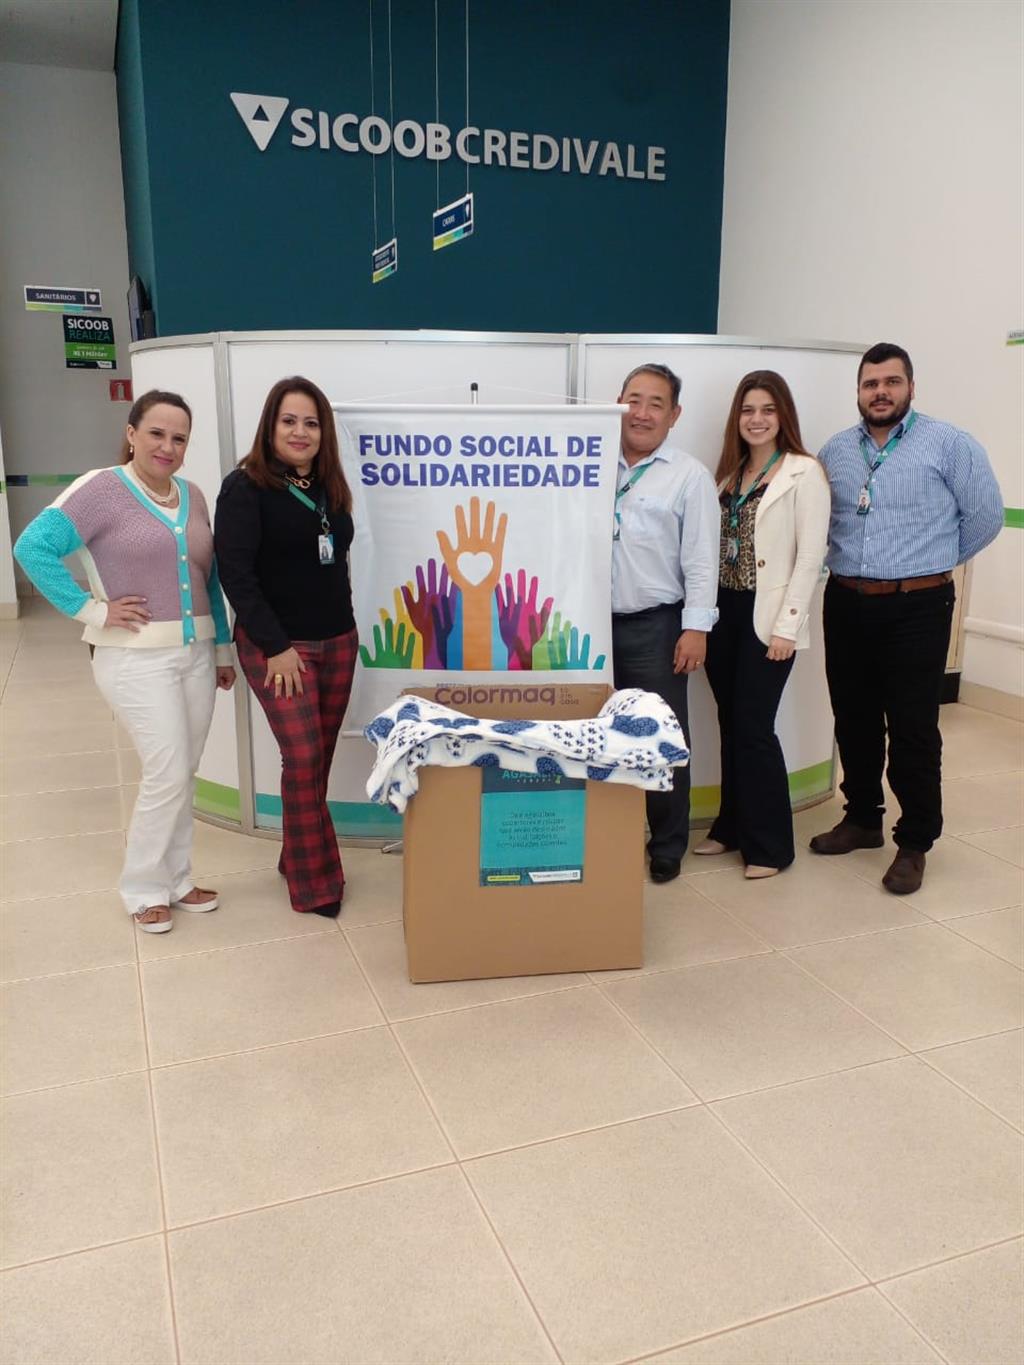 FUNDO SOCIAL - Fundo Social de Solidariedade de Regente Feijó recebe doações de cobertores SICOOB CREDIVALE de Regente Feijó